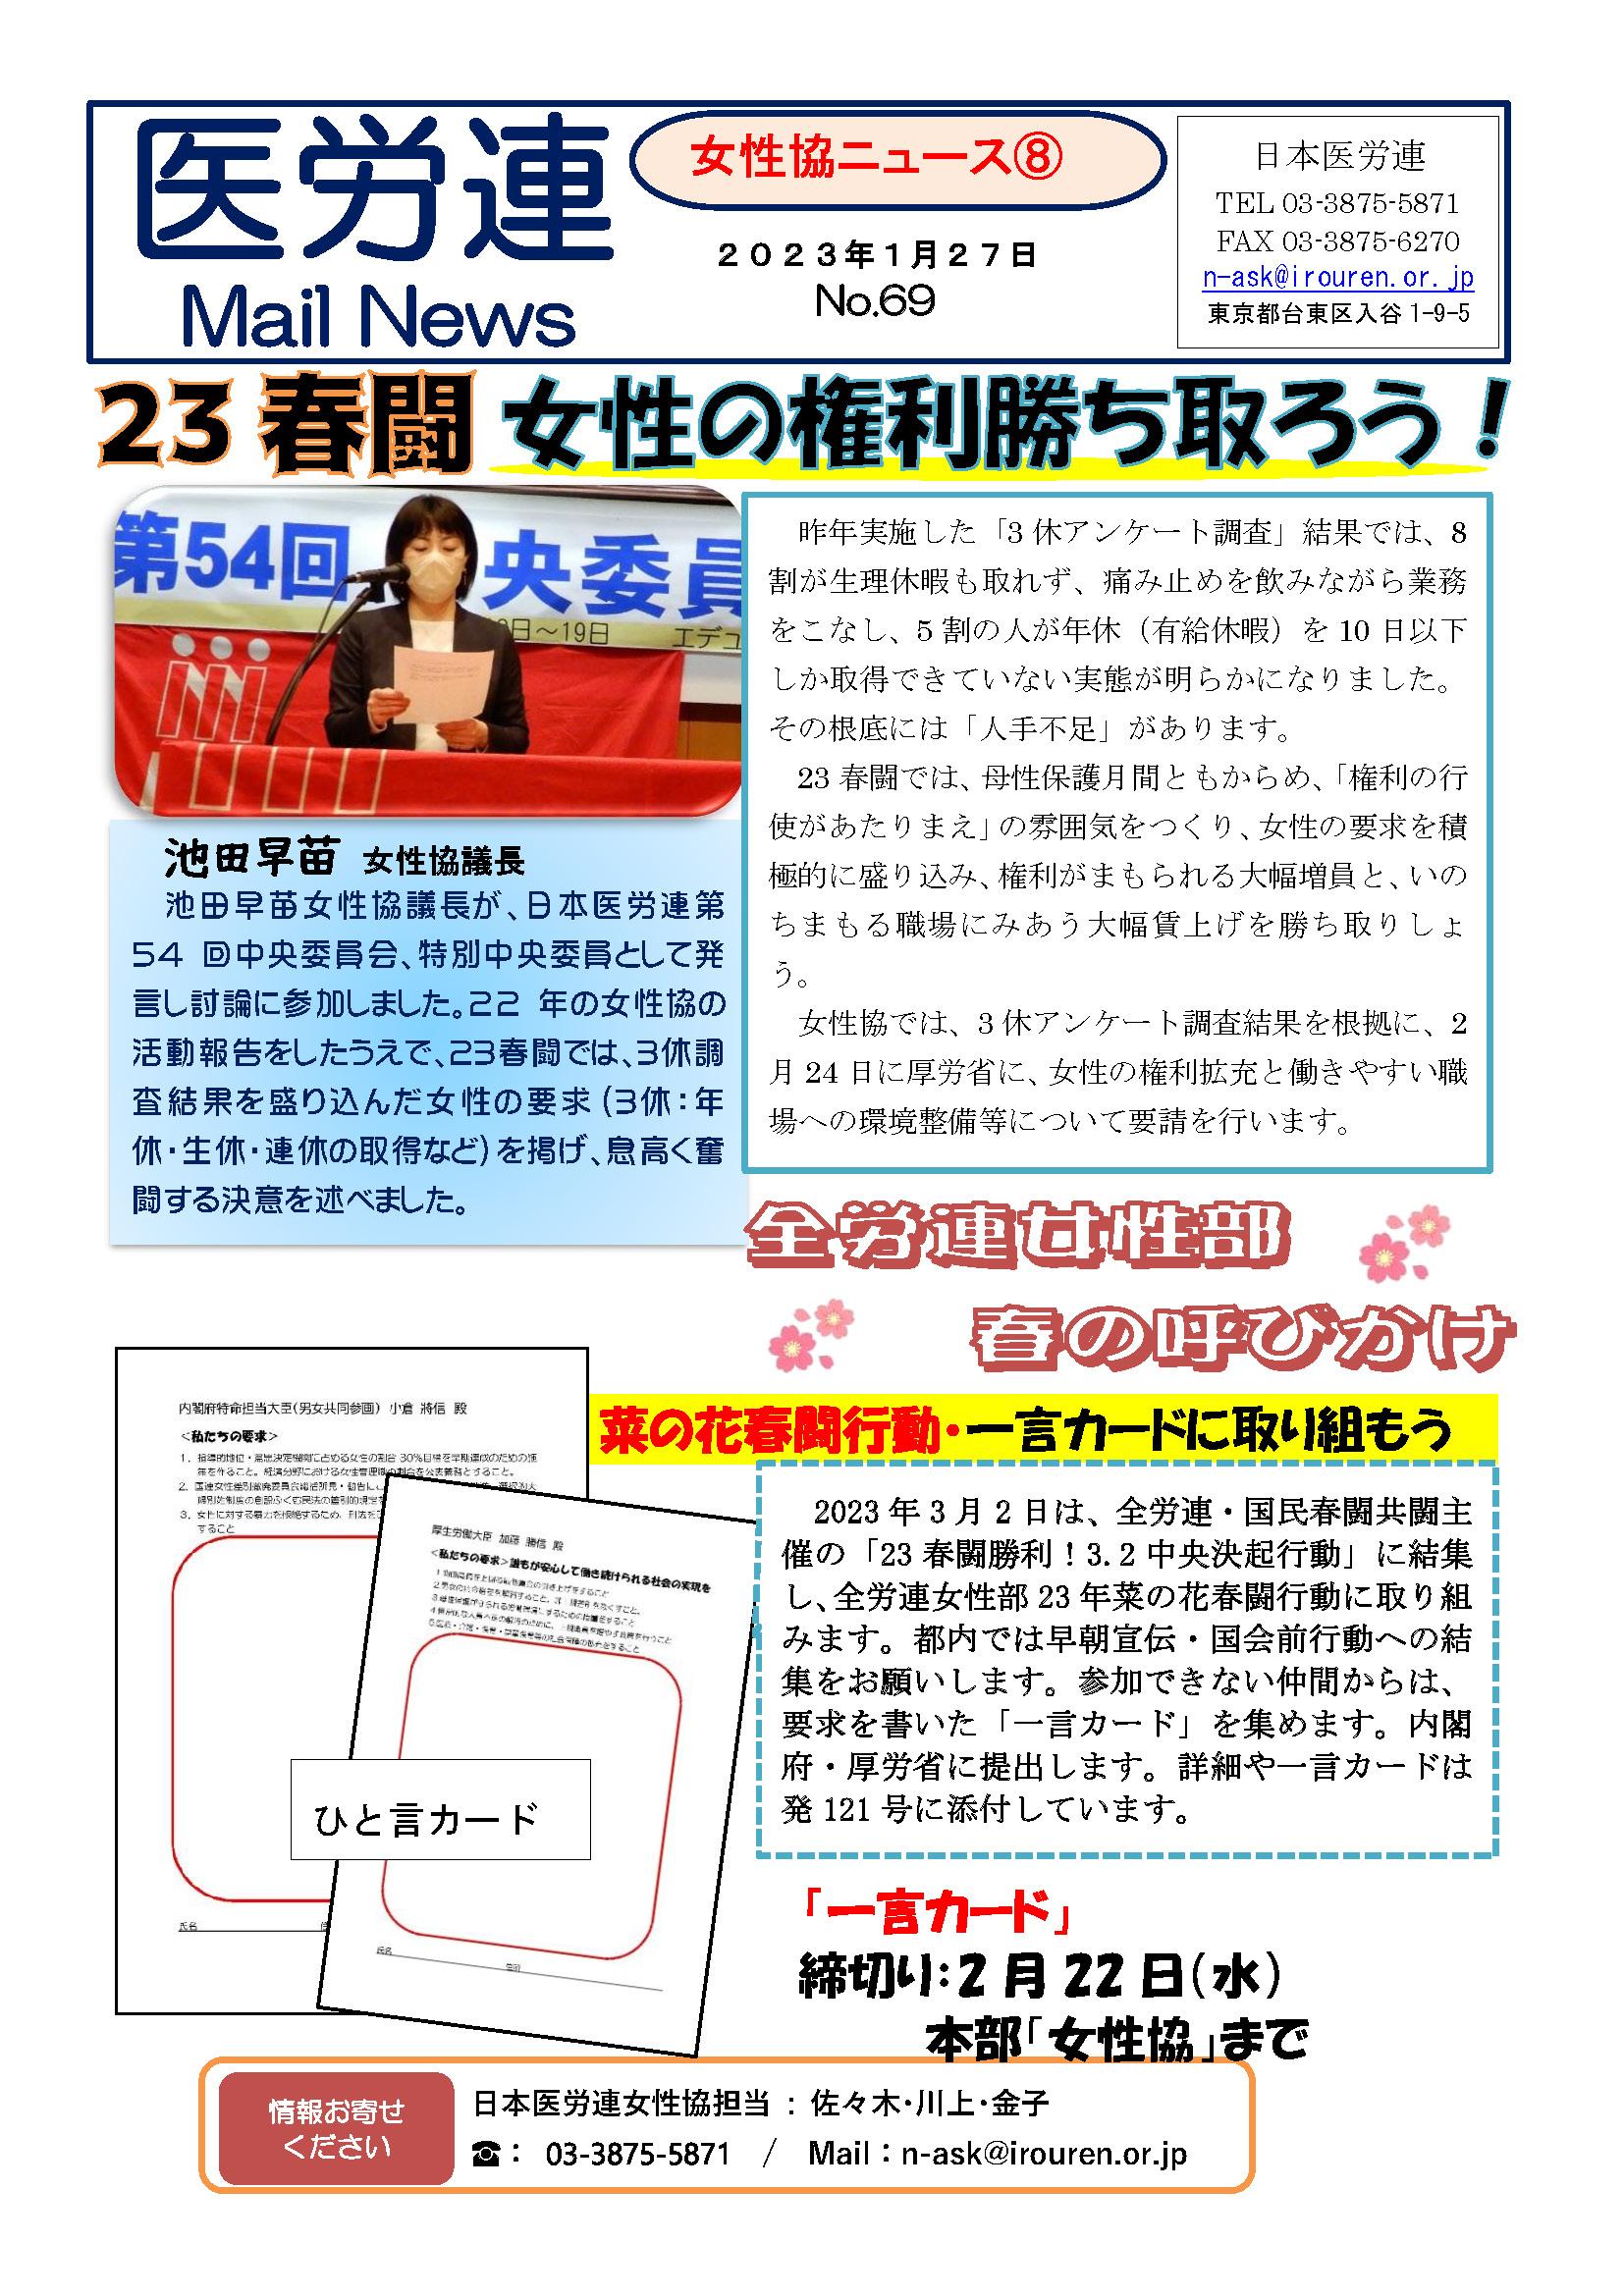 医労連MailNews69号（女性協News8・23春闘で女性の権利勝ち取ろう）_ページ_1.jpg